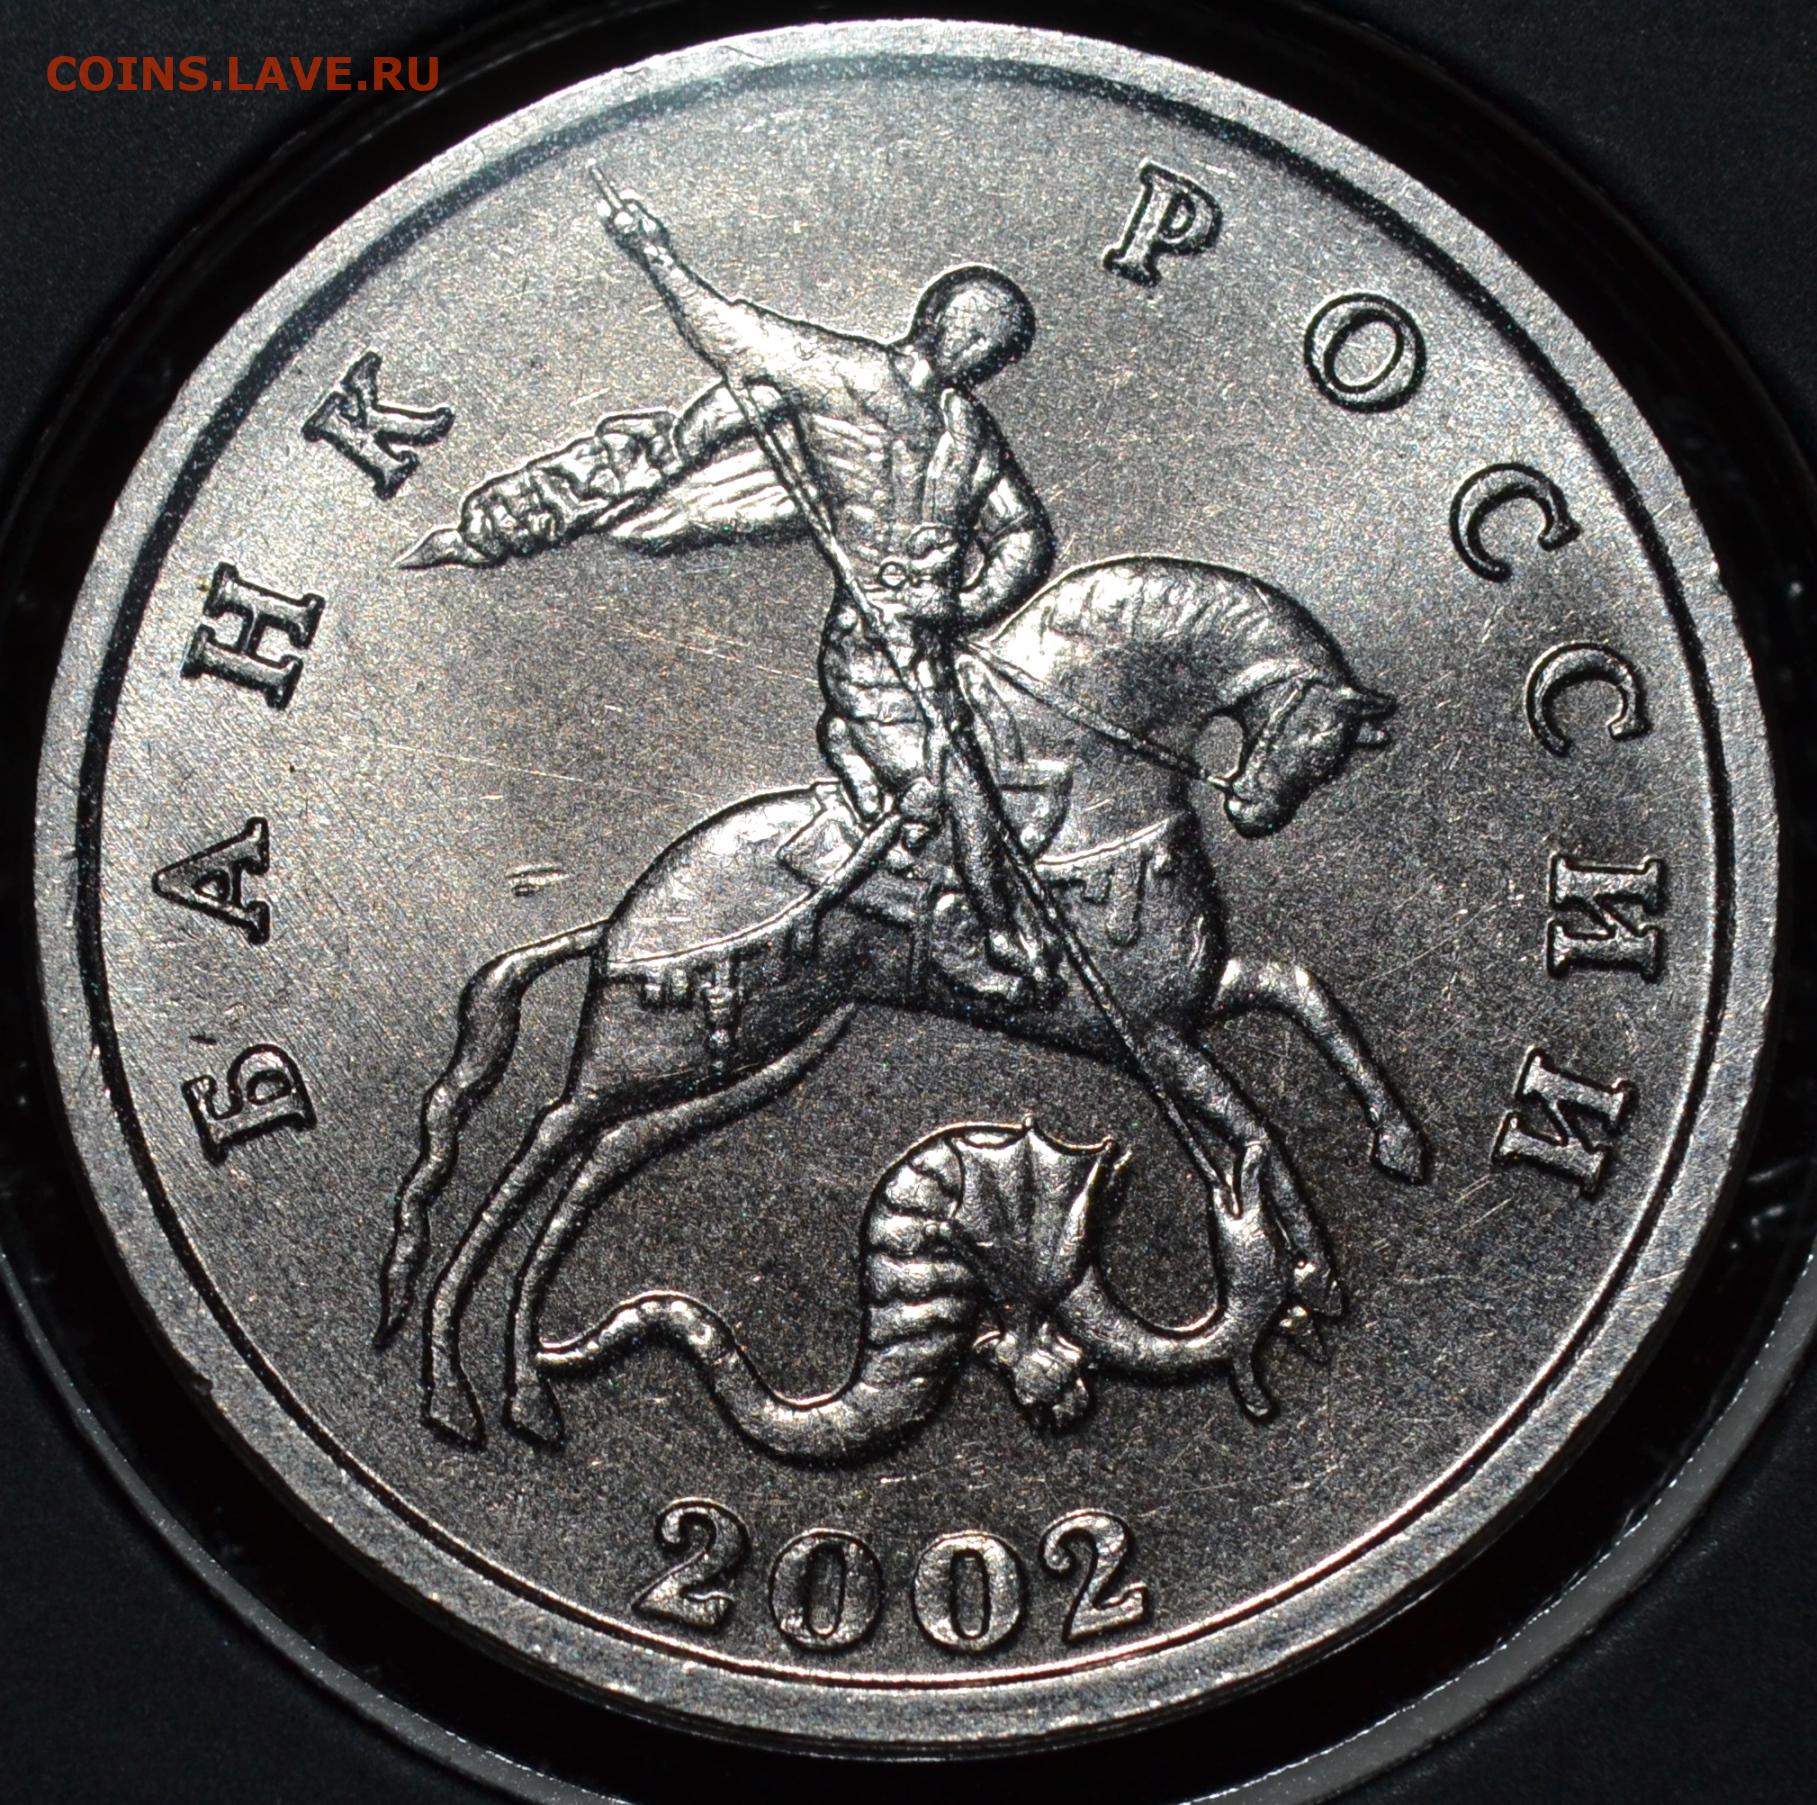 5 Копеек 2002 без монетного двора